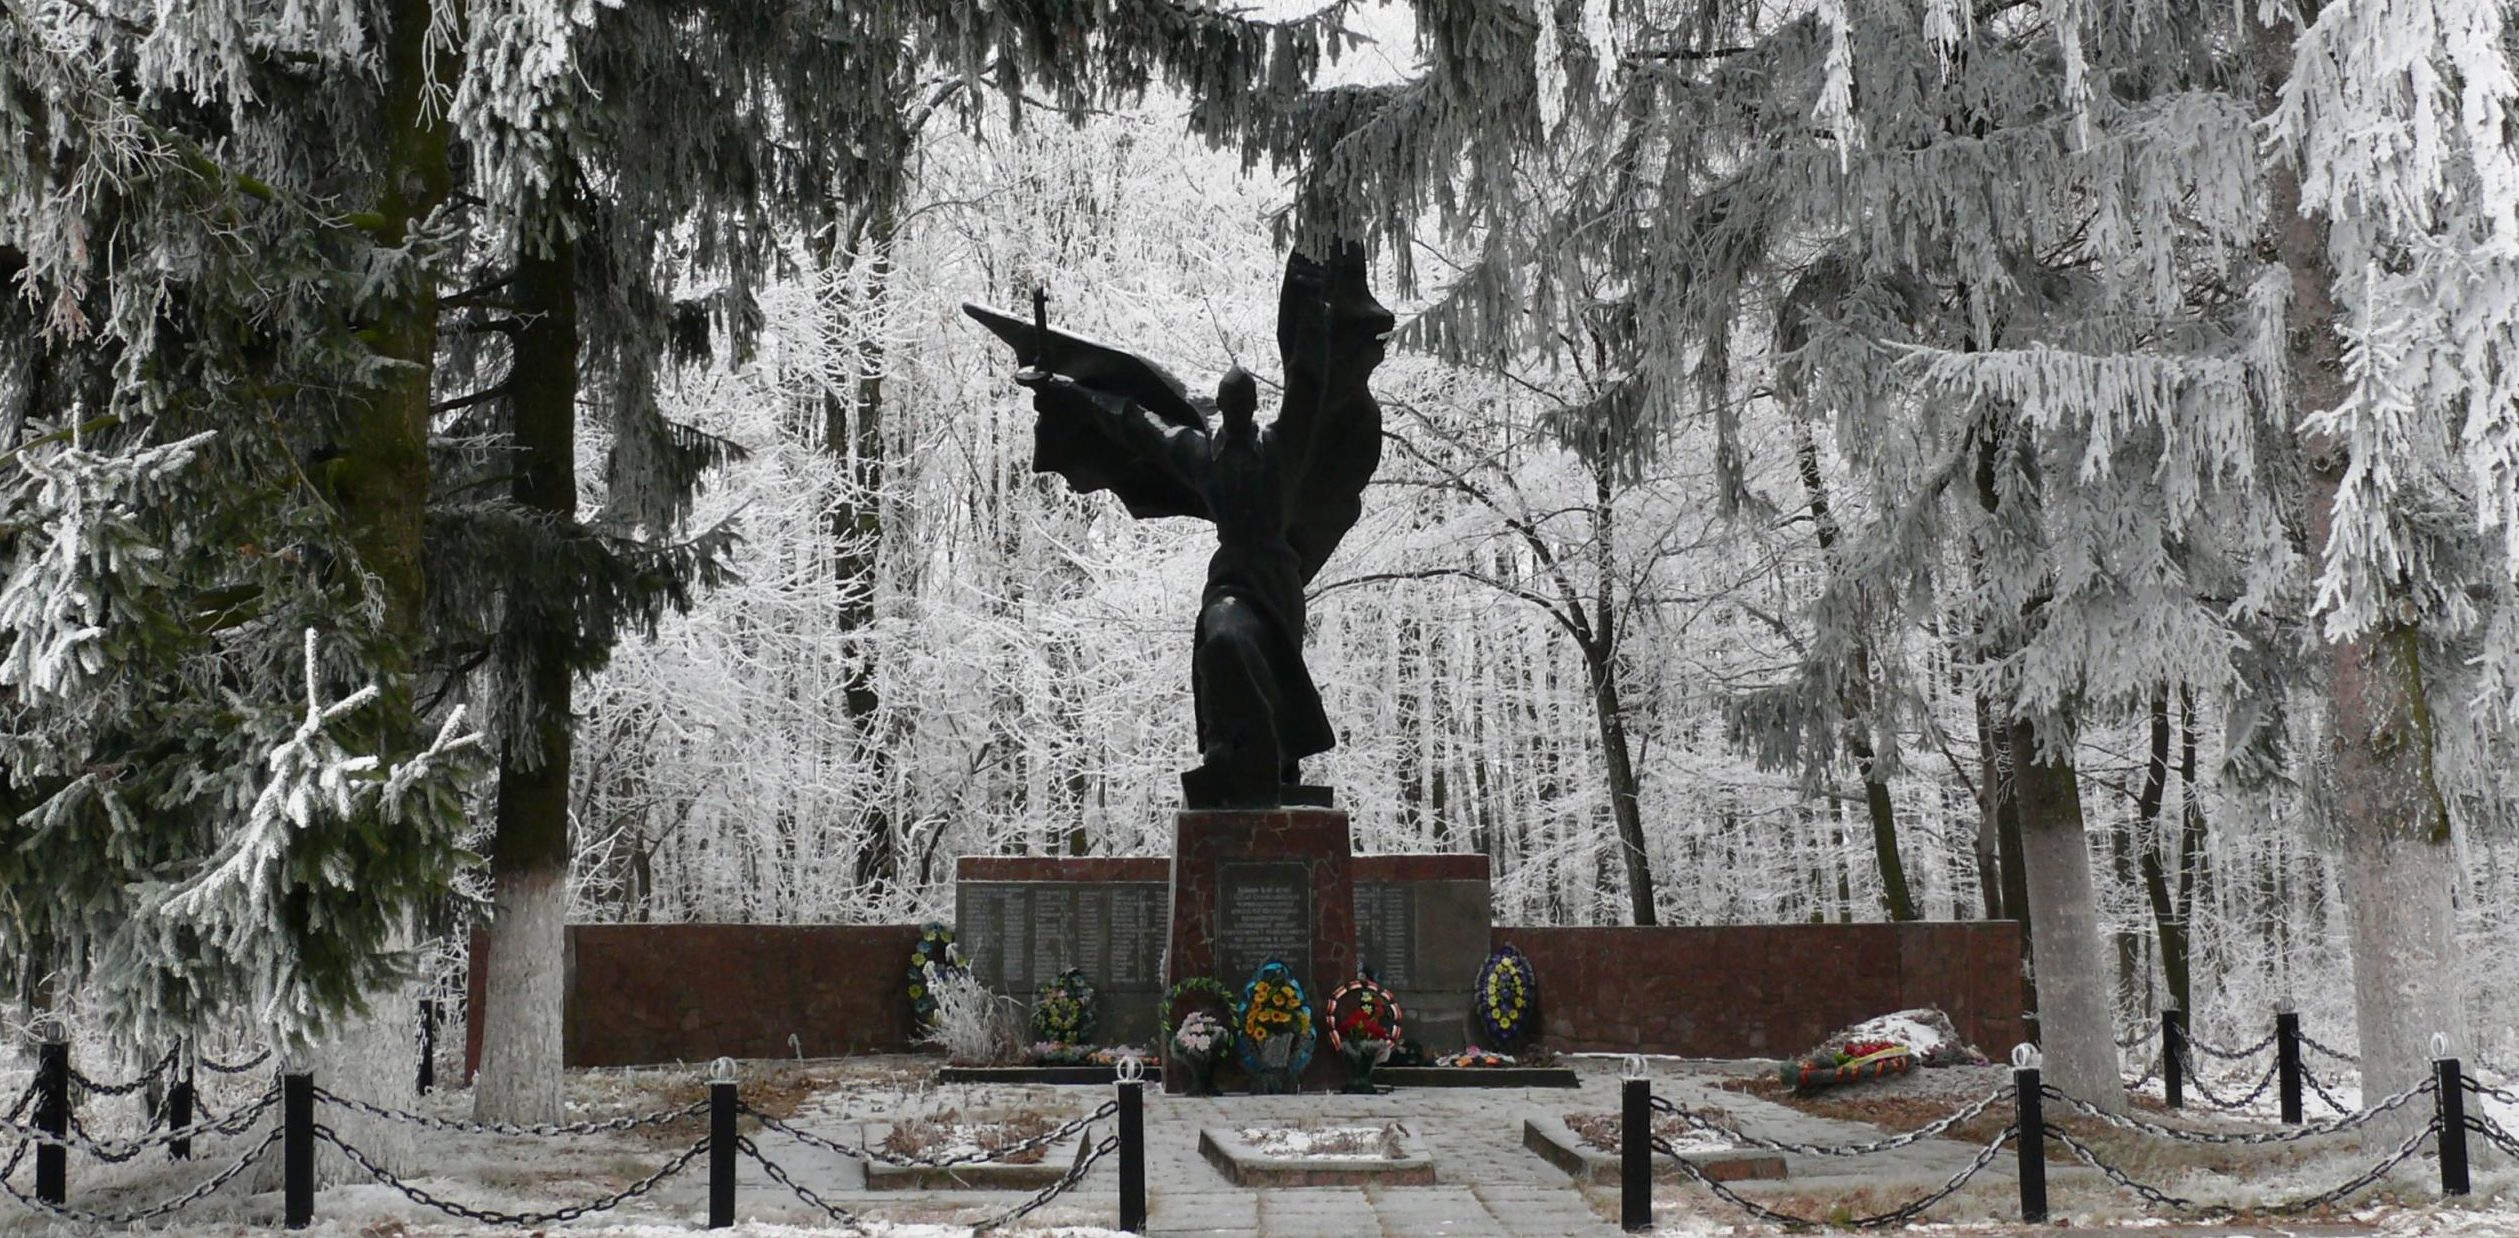 с. Голодьки Тетиевского р-на. Памятник, установленный на братской могиле, в которой похоронено 377 воинов, в т.ч. 300 неизвестных, погибших в годы войны. 